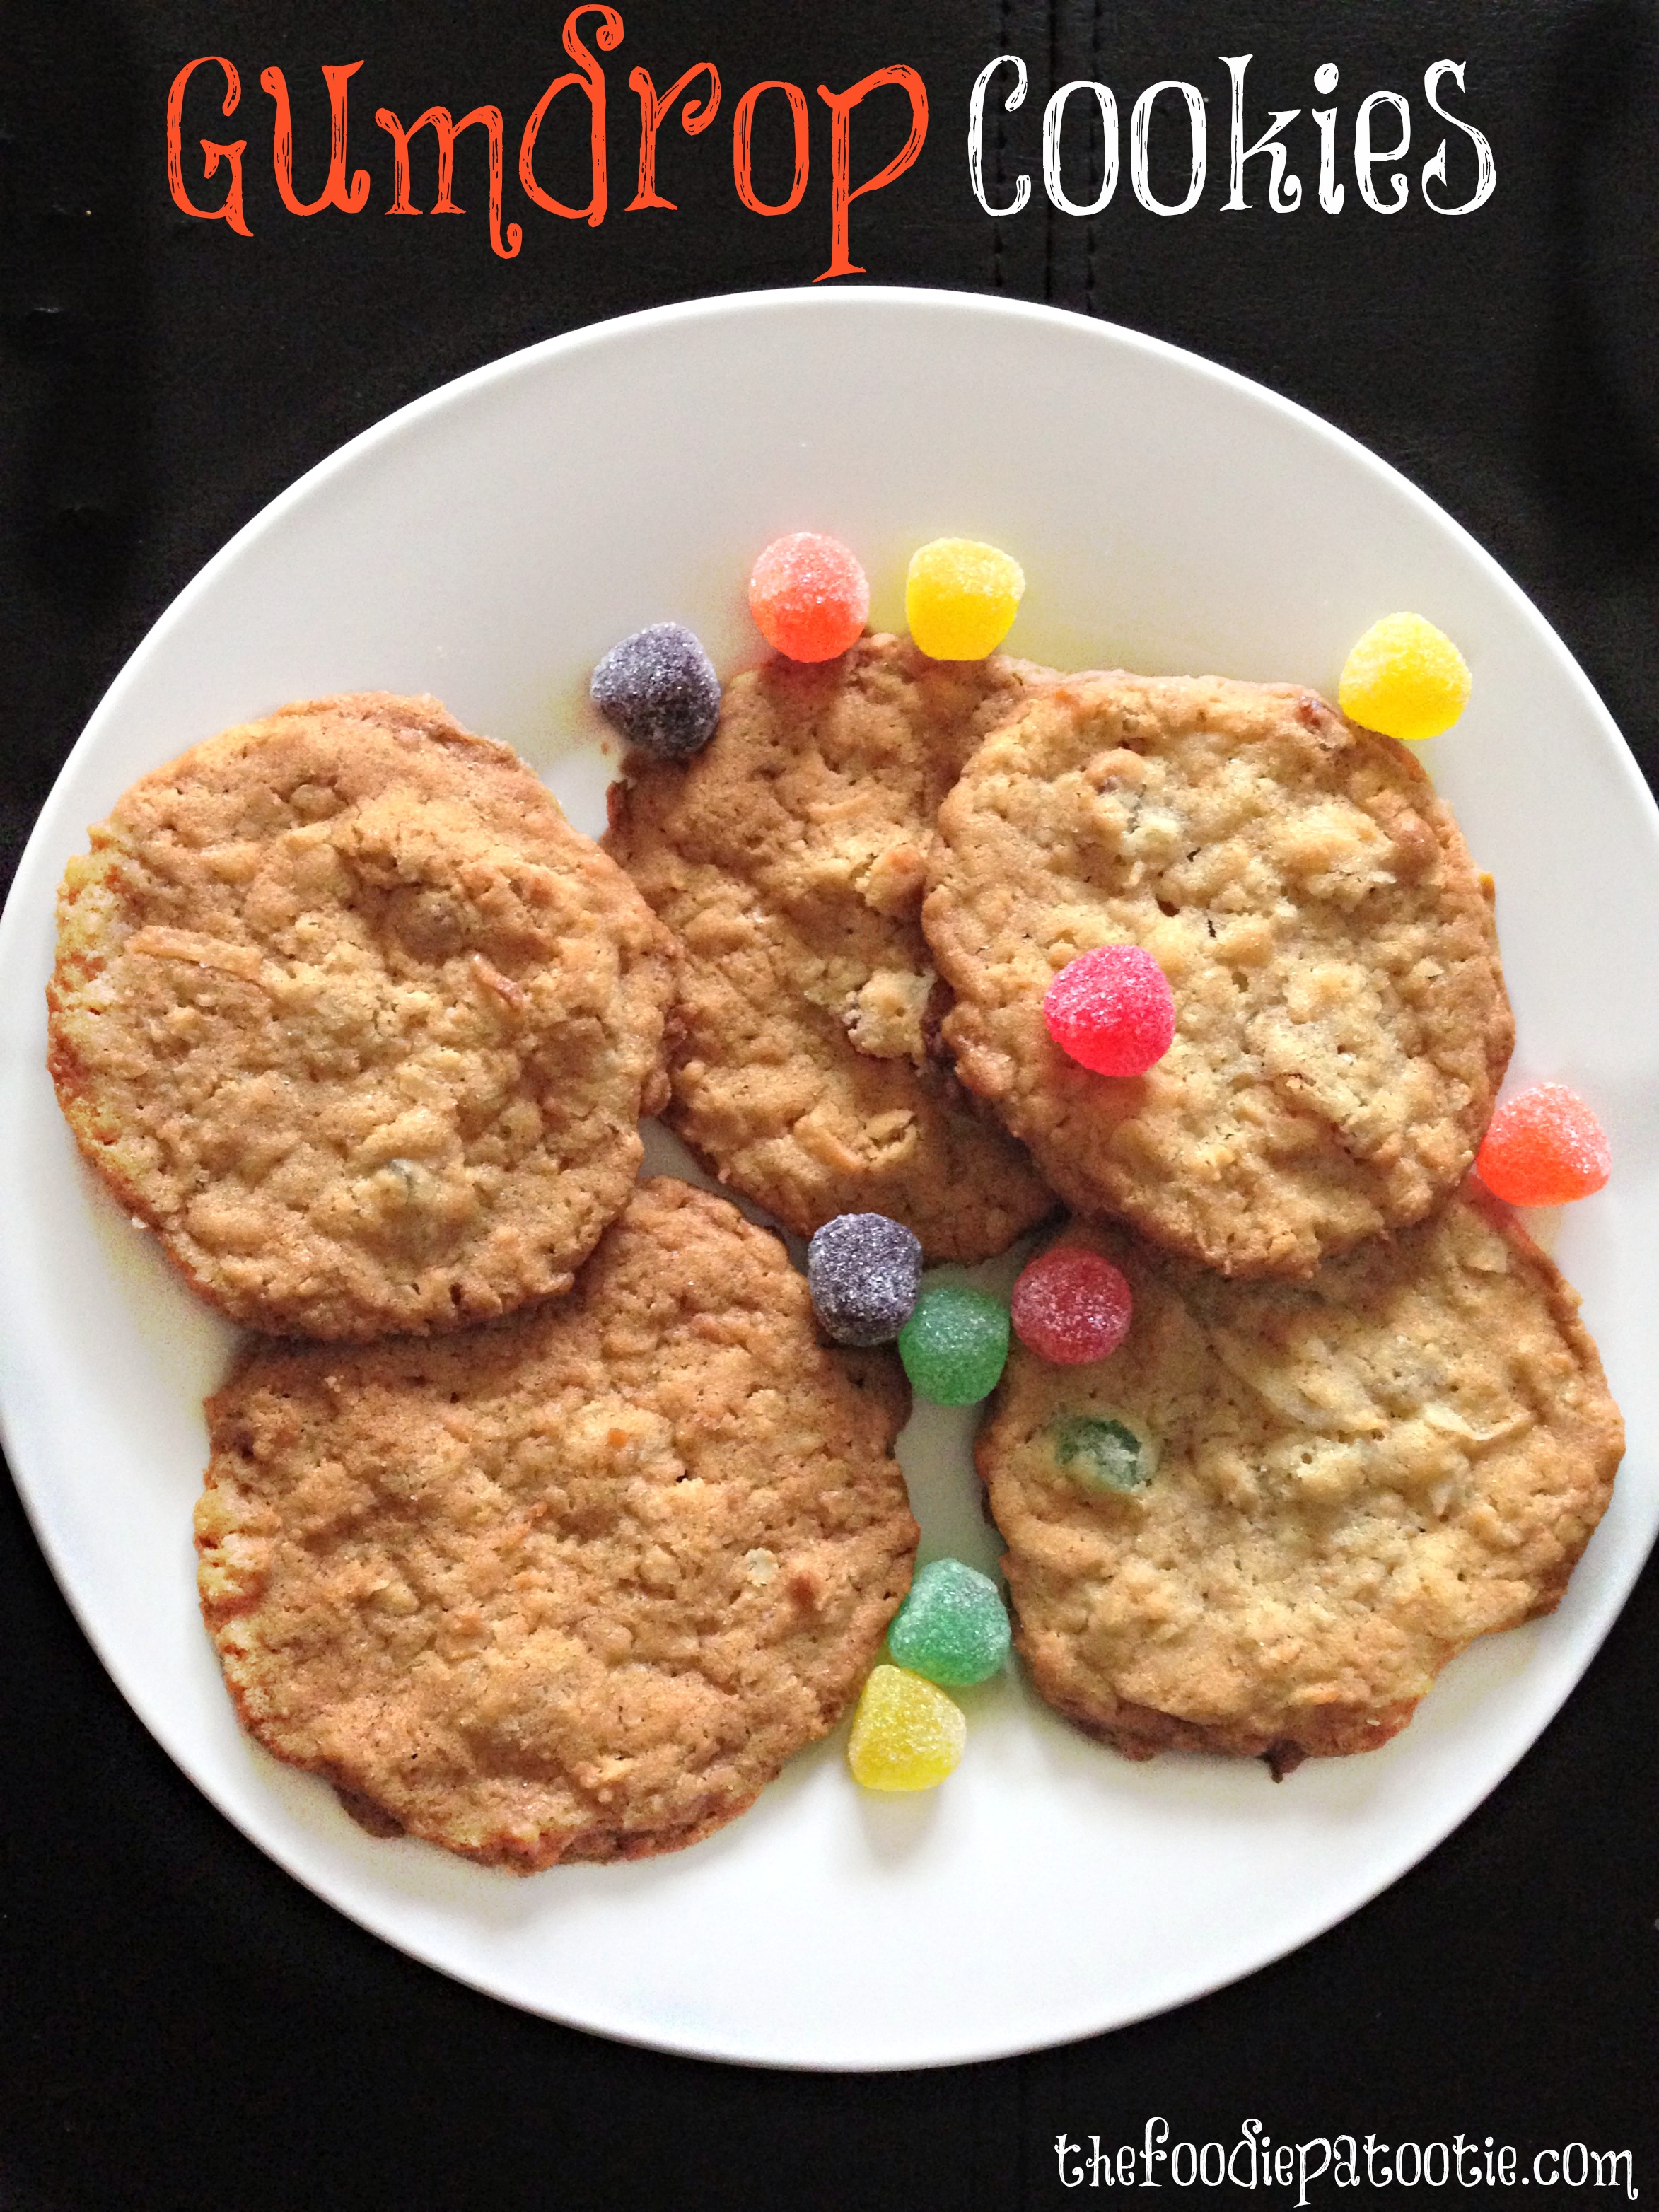 National Gumdrop Day | Gumdrop Cookies – The Foodie Patootie